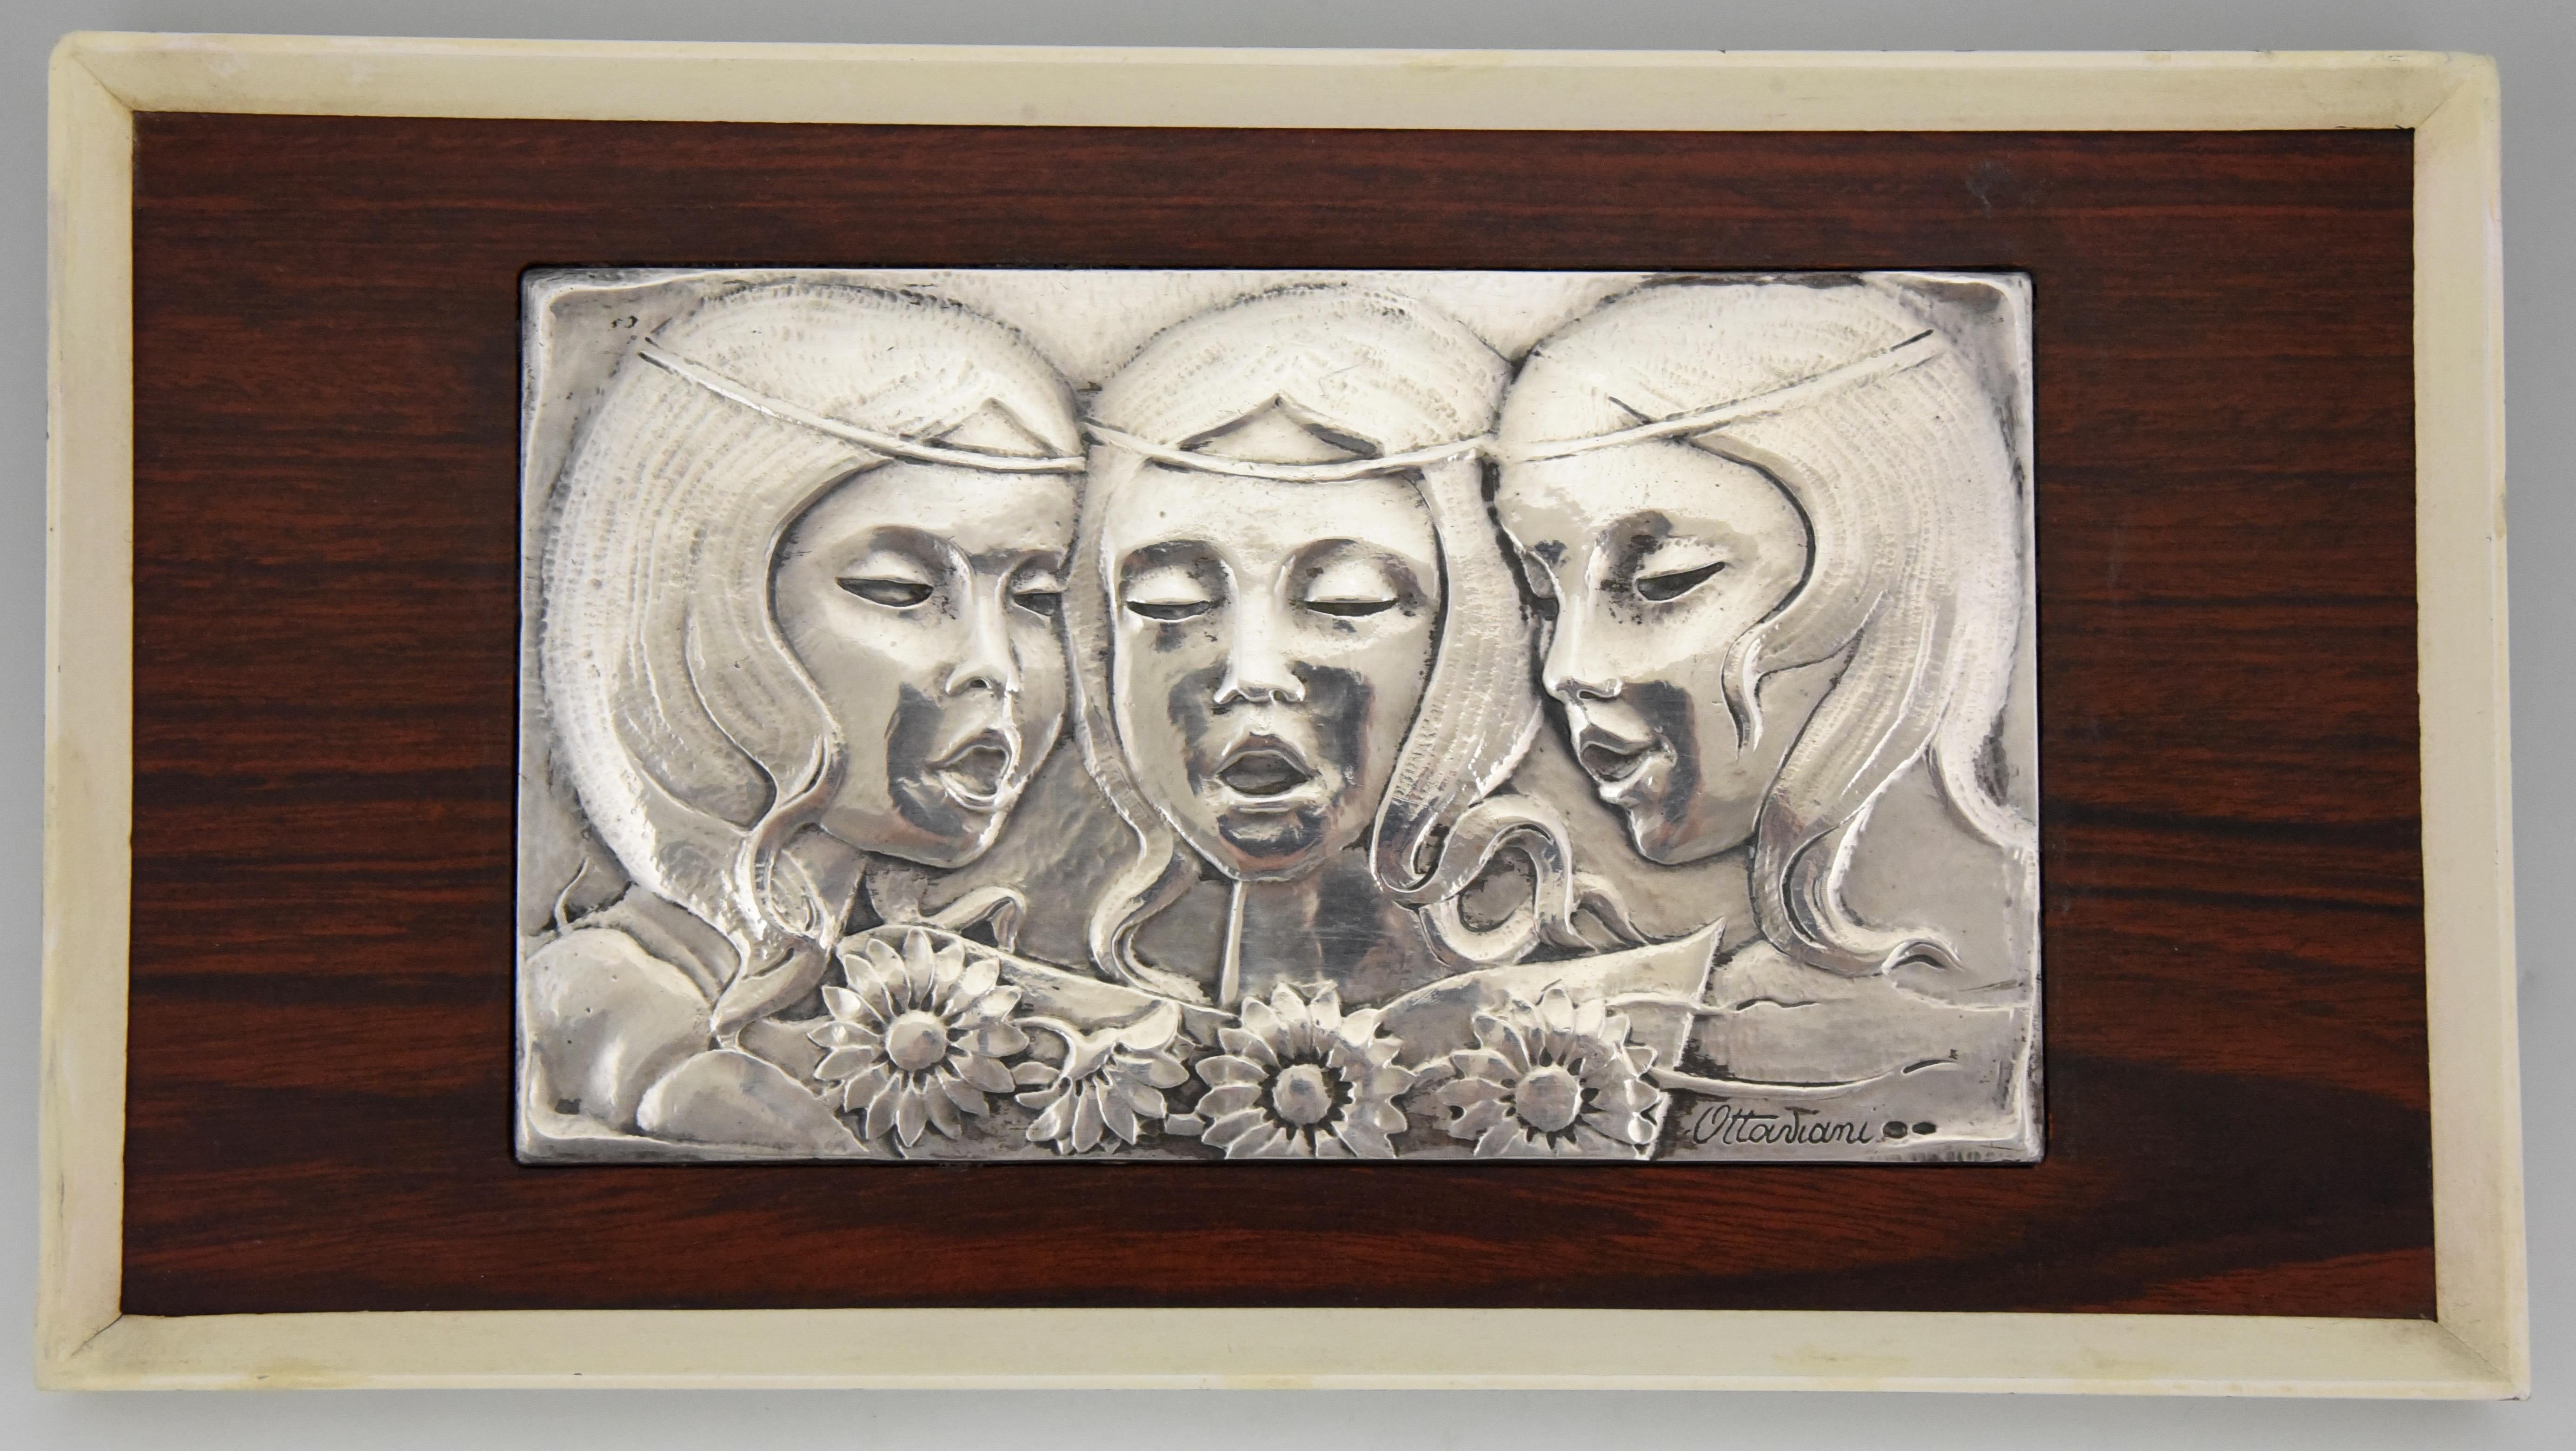 Hübsche Mid Century Sterling Silber Wandtafel 3 singende Mädchen mit Blumen. Signiert von dem italienischen Silberschmied Ottaviani, 1960. 
Ottaviani (1945) ist ein Schmuck- und Silberunternehmen mit Sitz in der kleinen Küstenstadt Recanati,